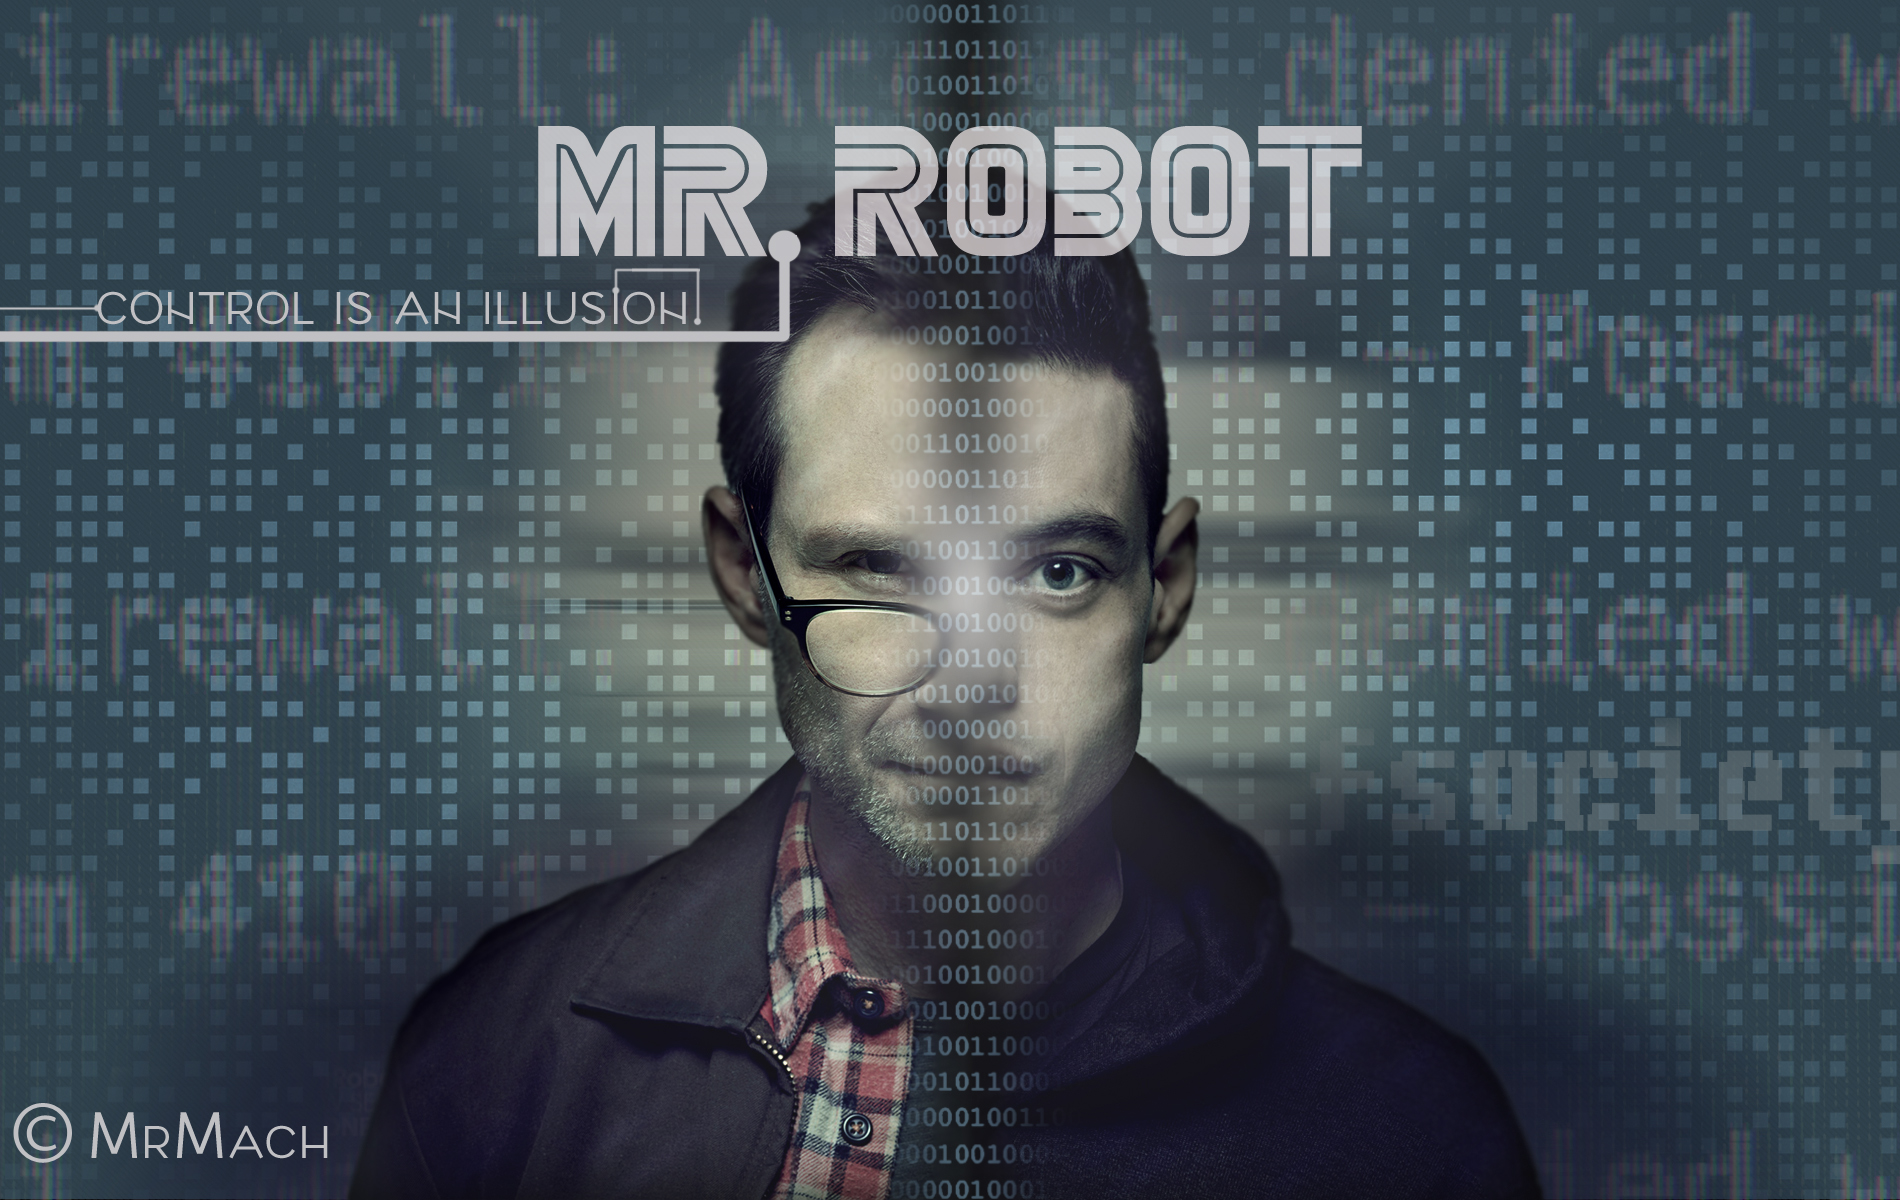 Mr. Robot Wallpaper by MartinMrmach on DeviantArt